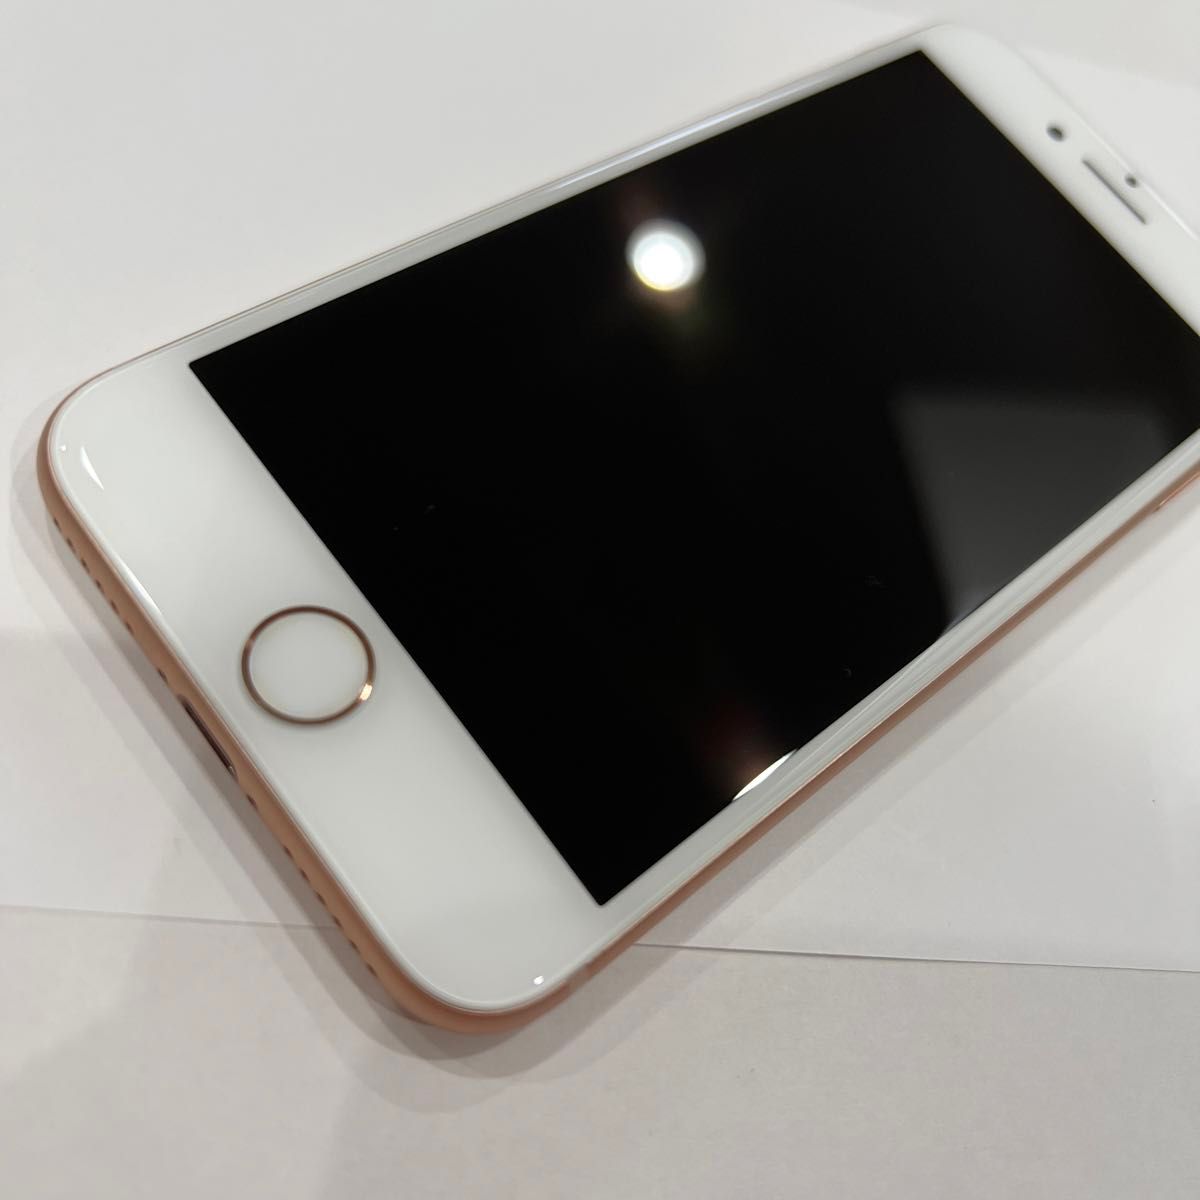 オンライン限定商品 美品 iPhone8 ローズゴールド 64GB バッテリー交換